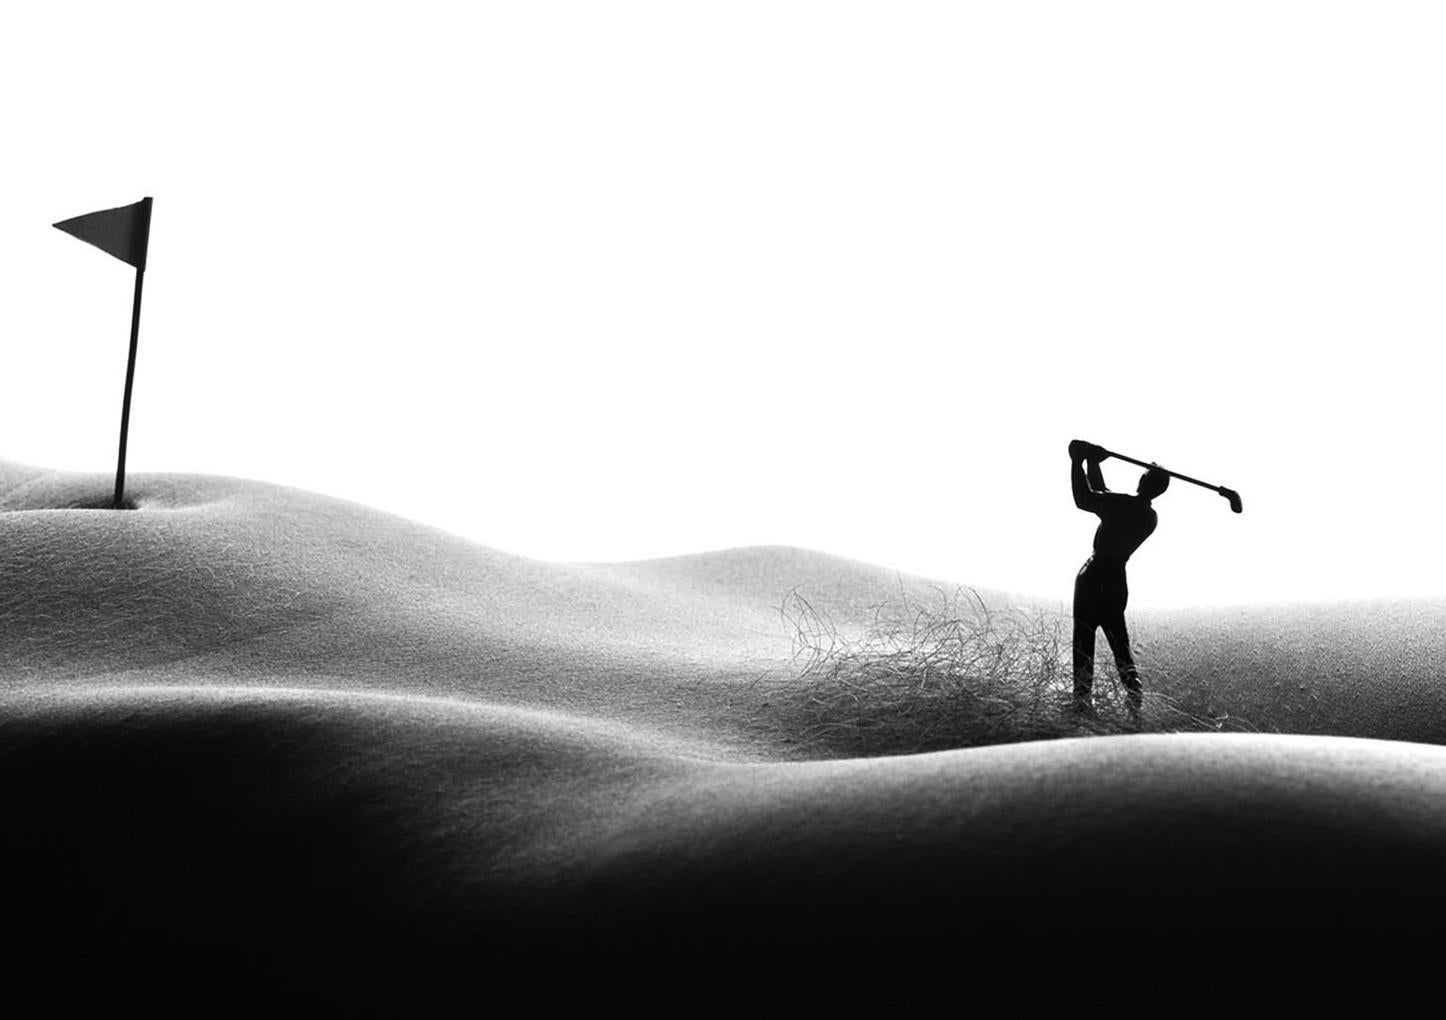 Nude Photograph Allan I. Teger - Photographies en noir et blanc « Golfing in the rough » (golf dans le brut)